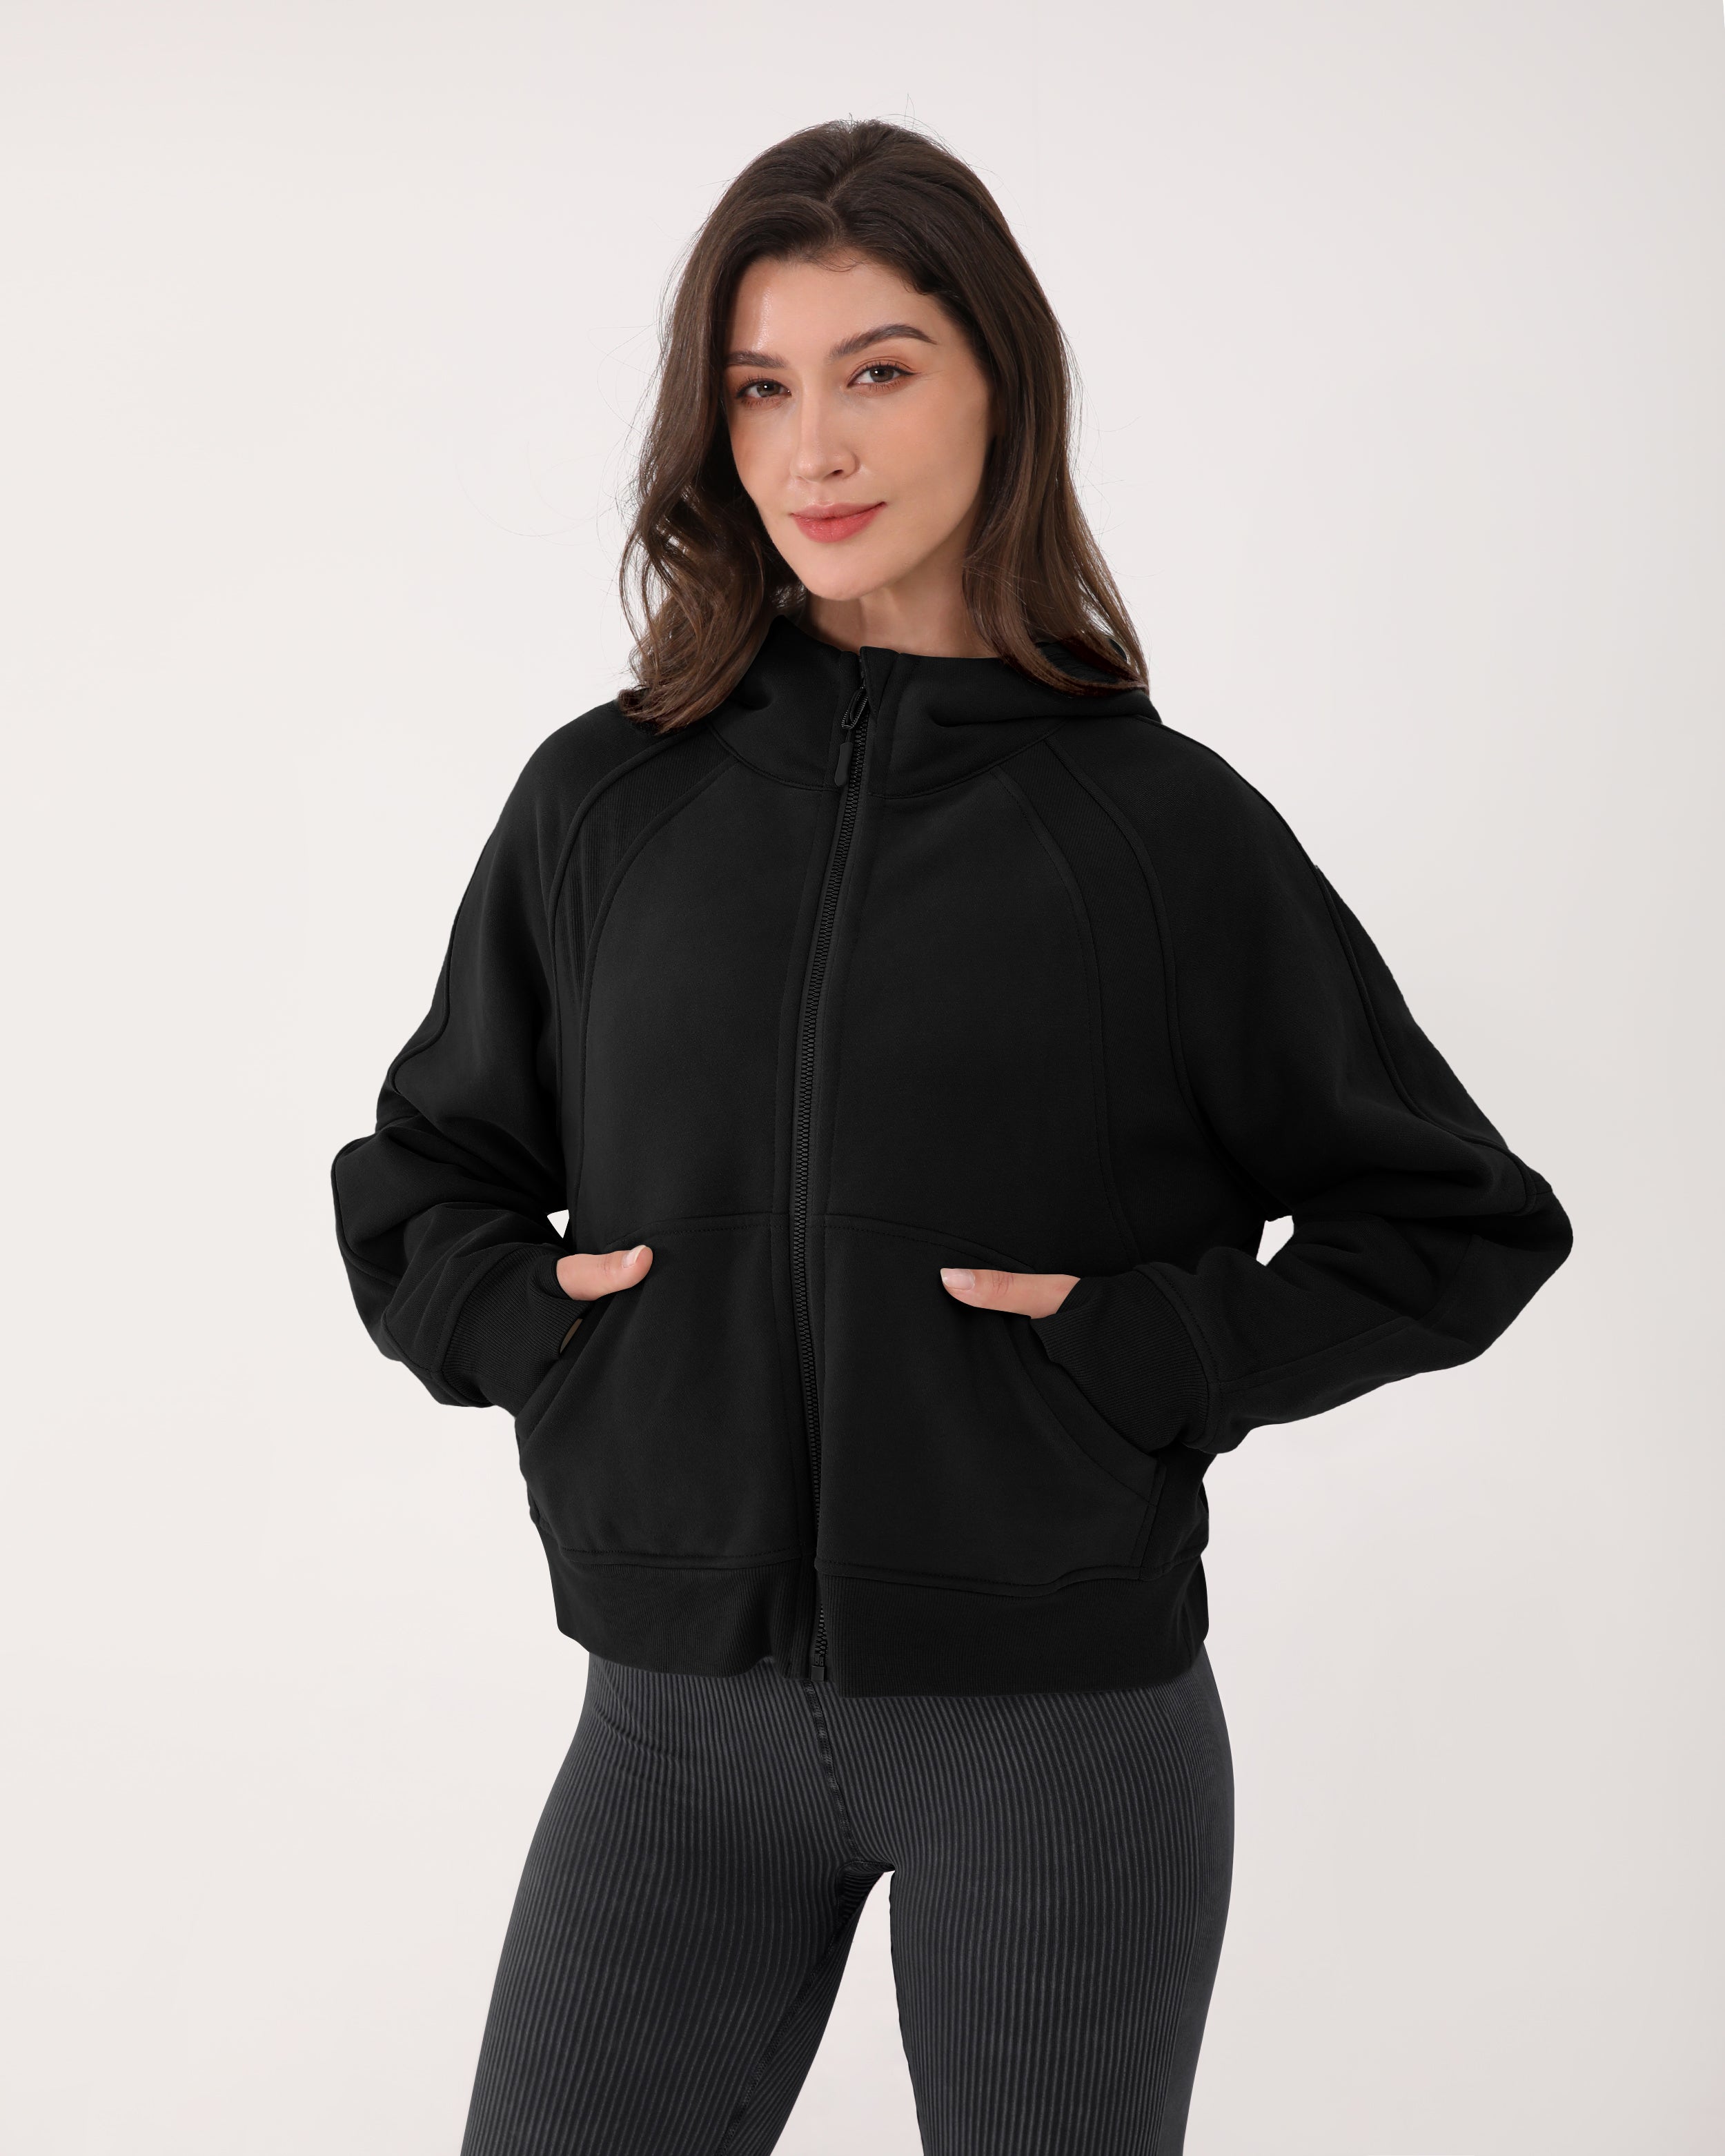 Oversized Full-Zip Fleece Hoodie - Ver 2.0 Black - ododos